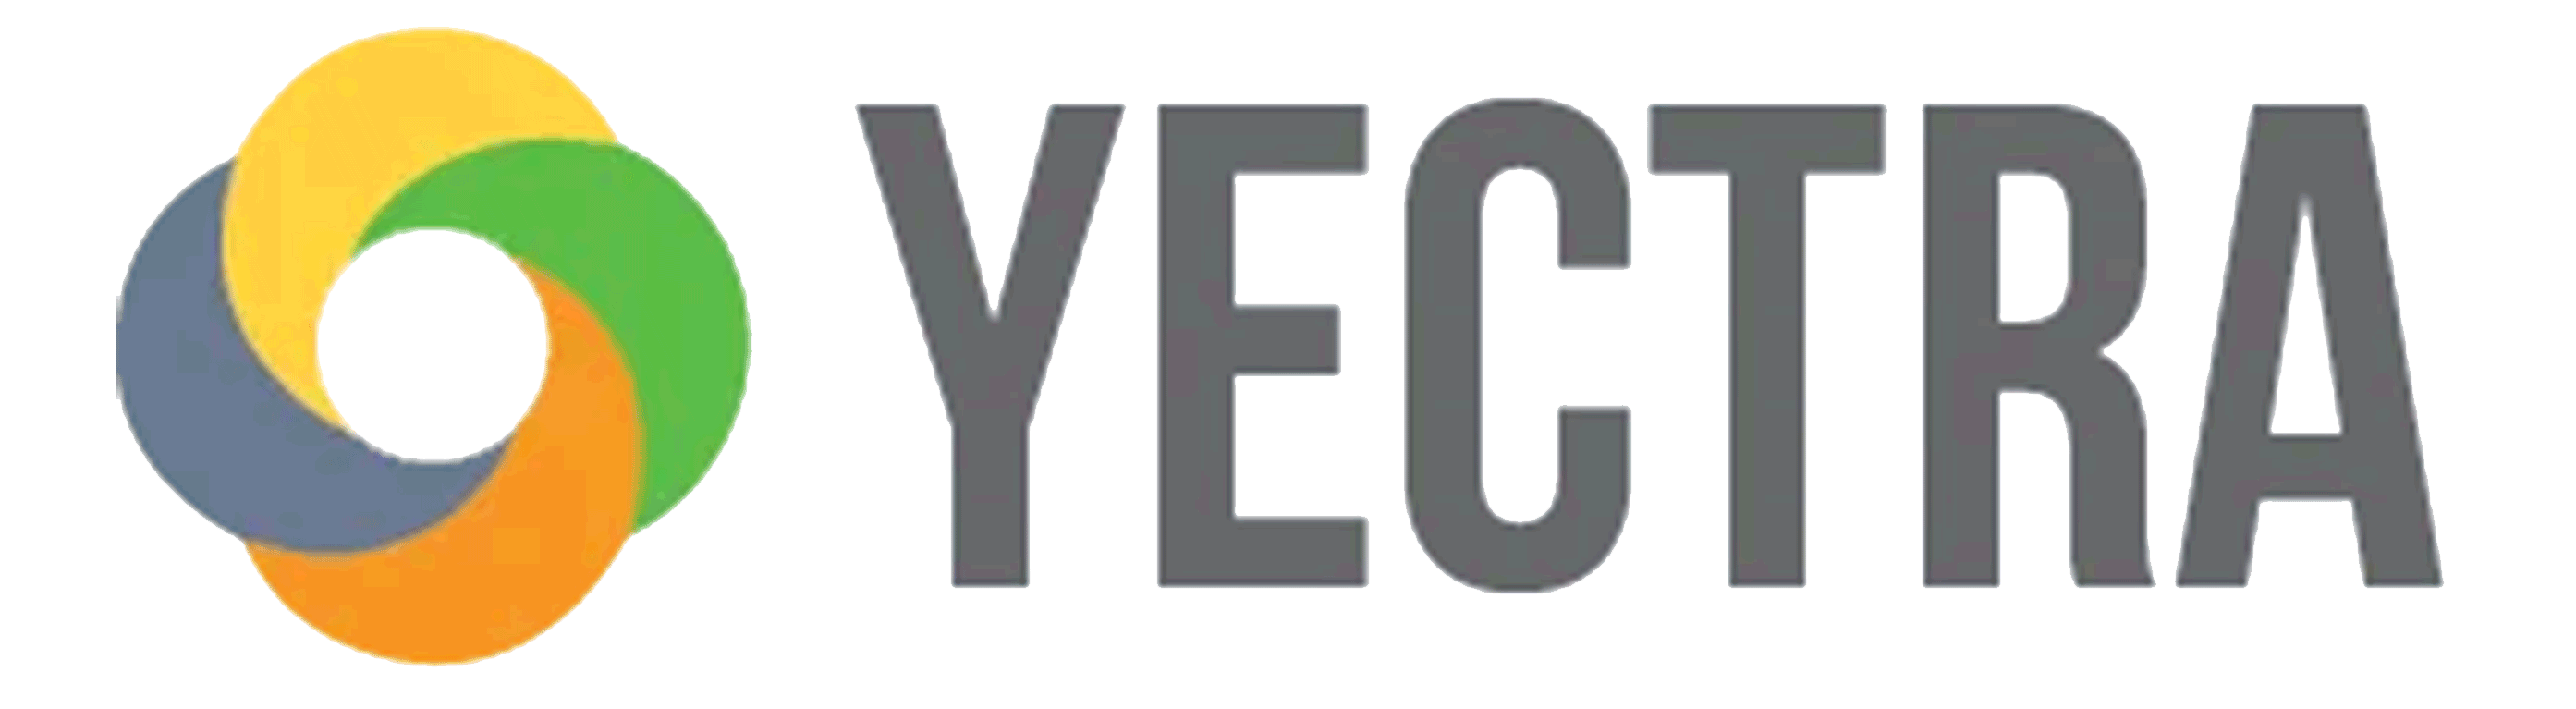 Yectra Technologies